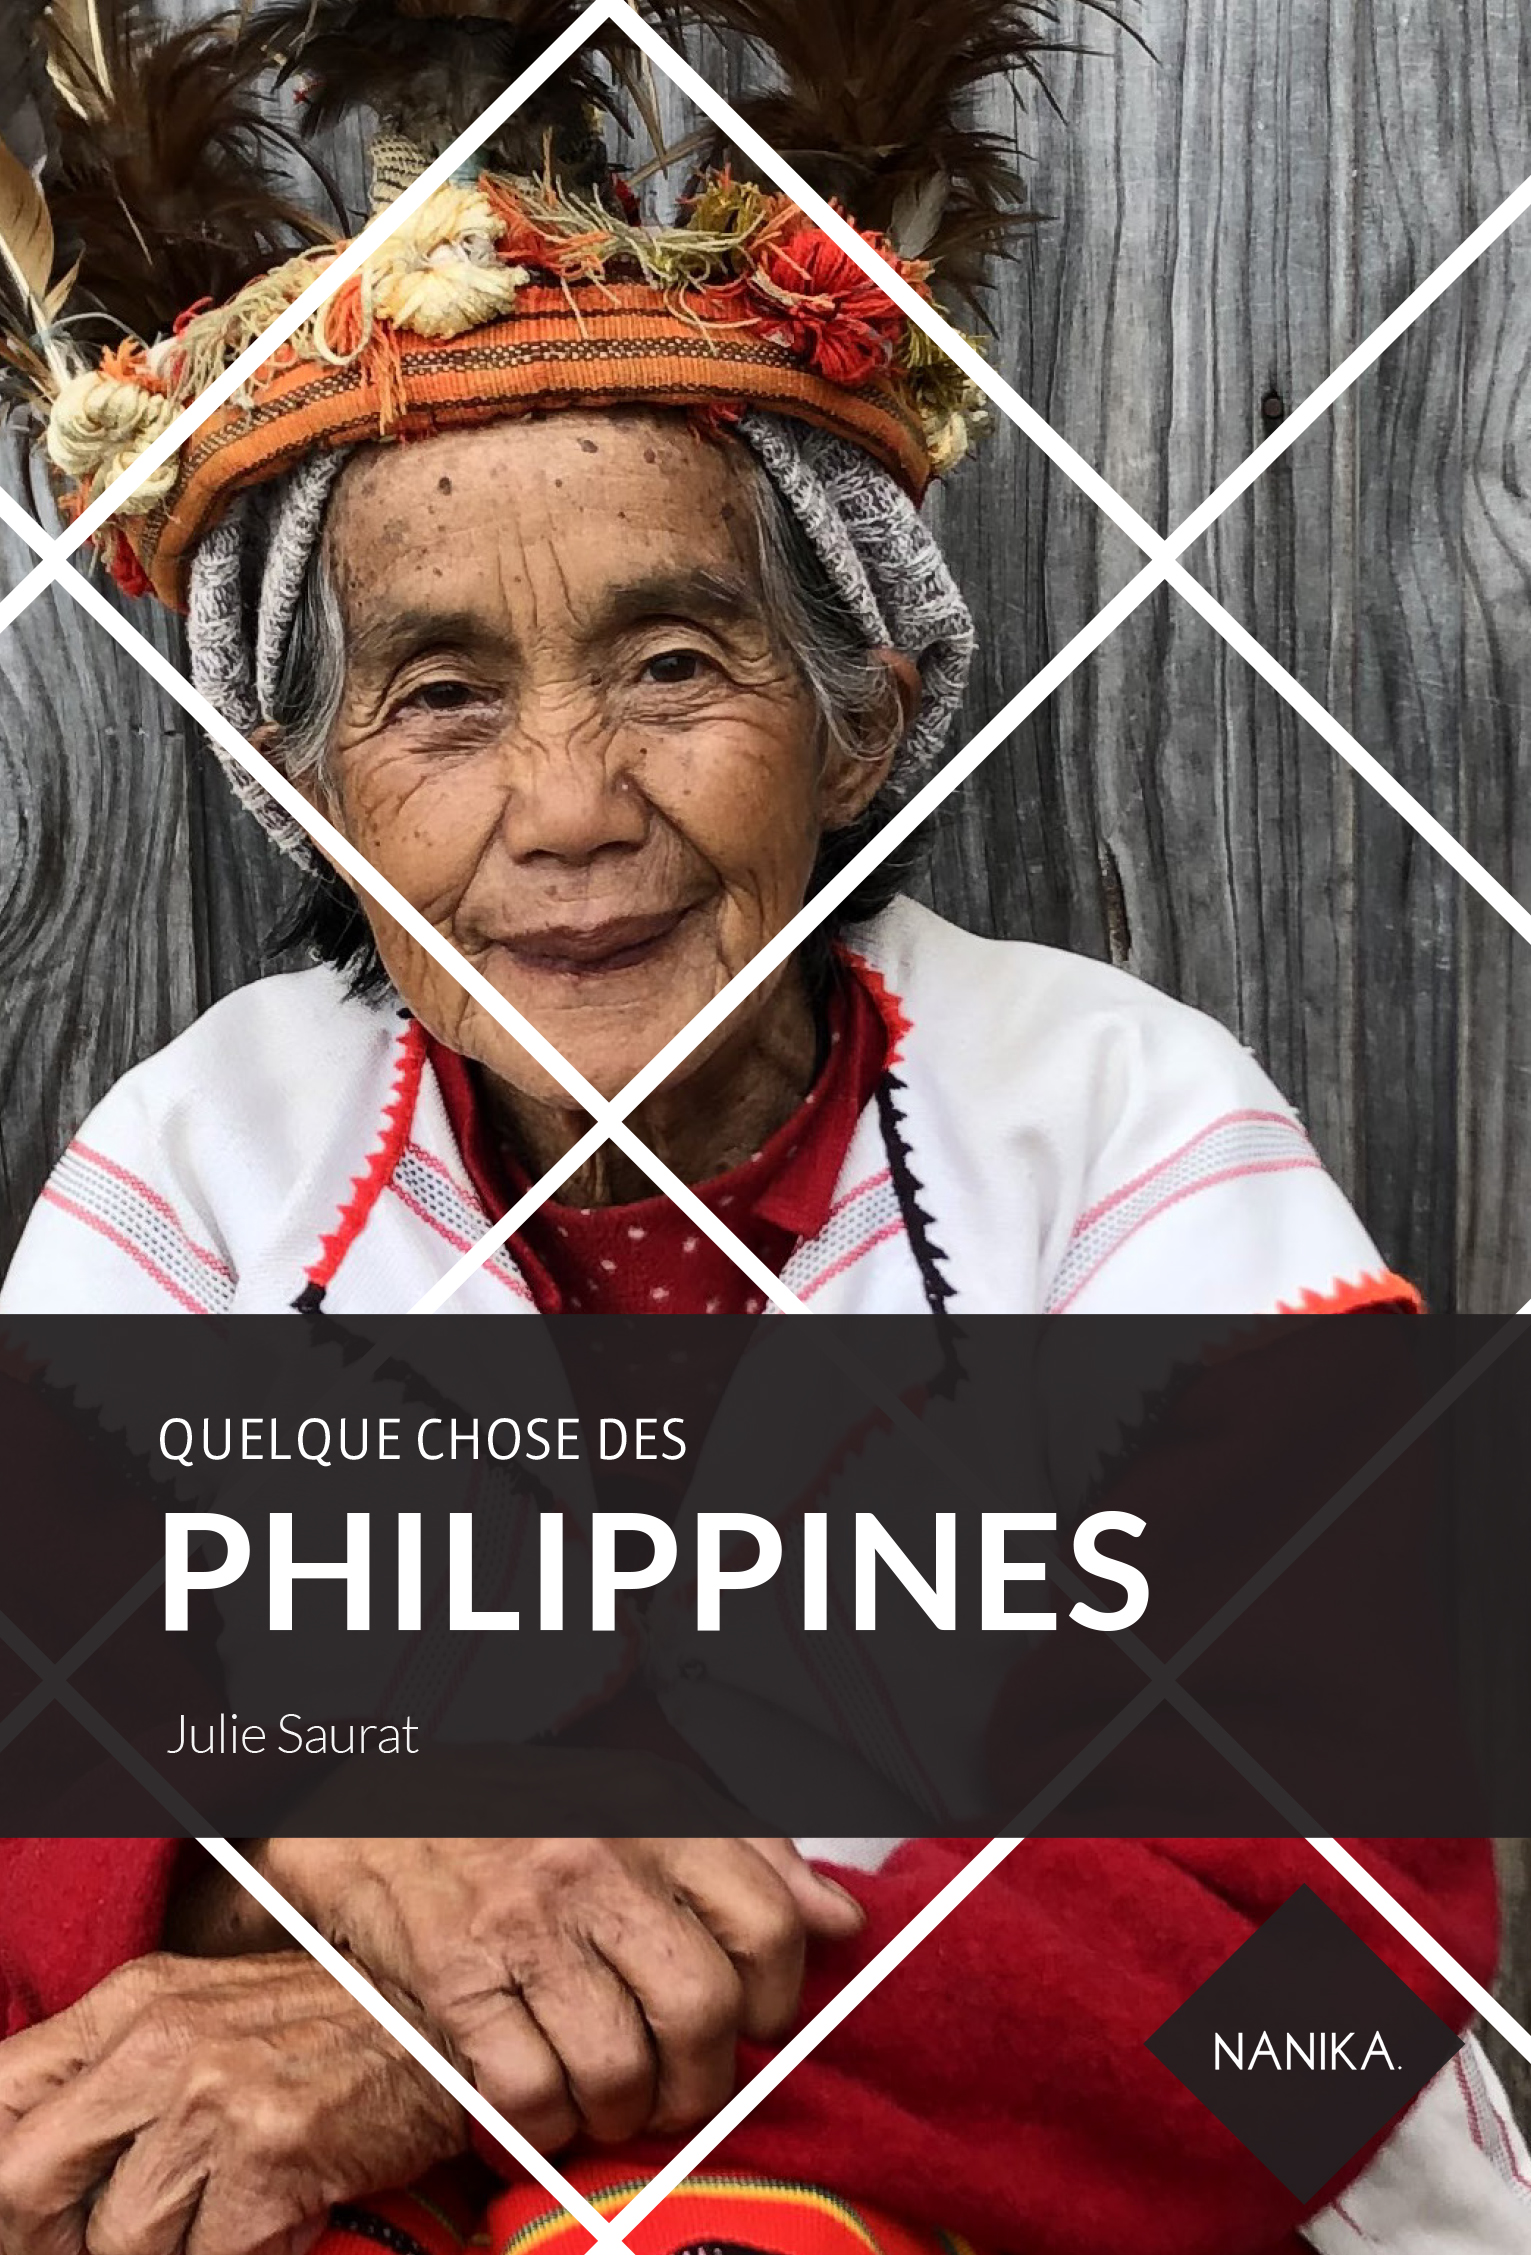 Quelque chose des Philippines, Julie Saurat, éditions Nanika